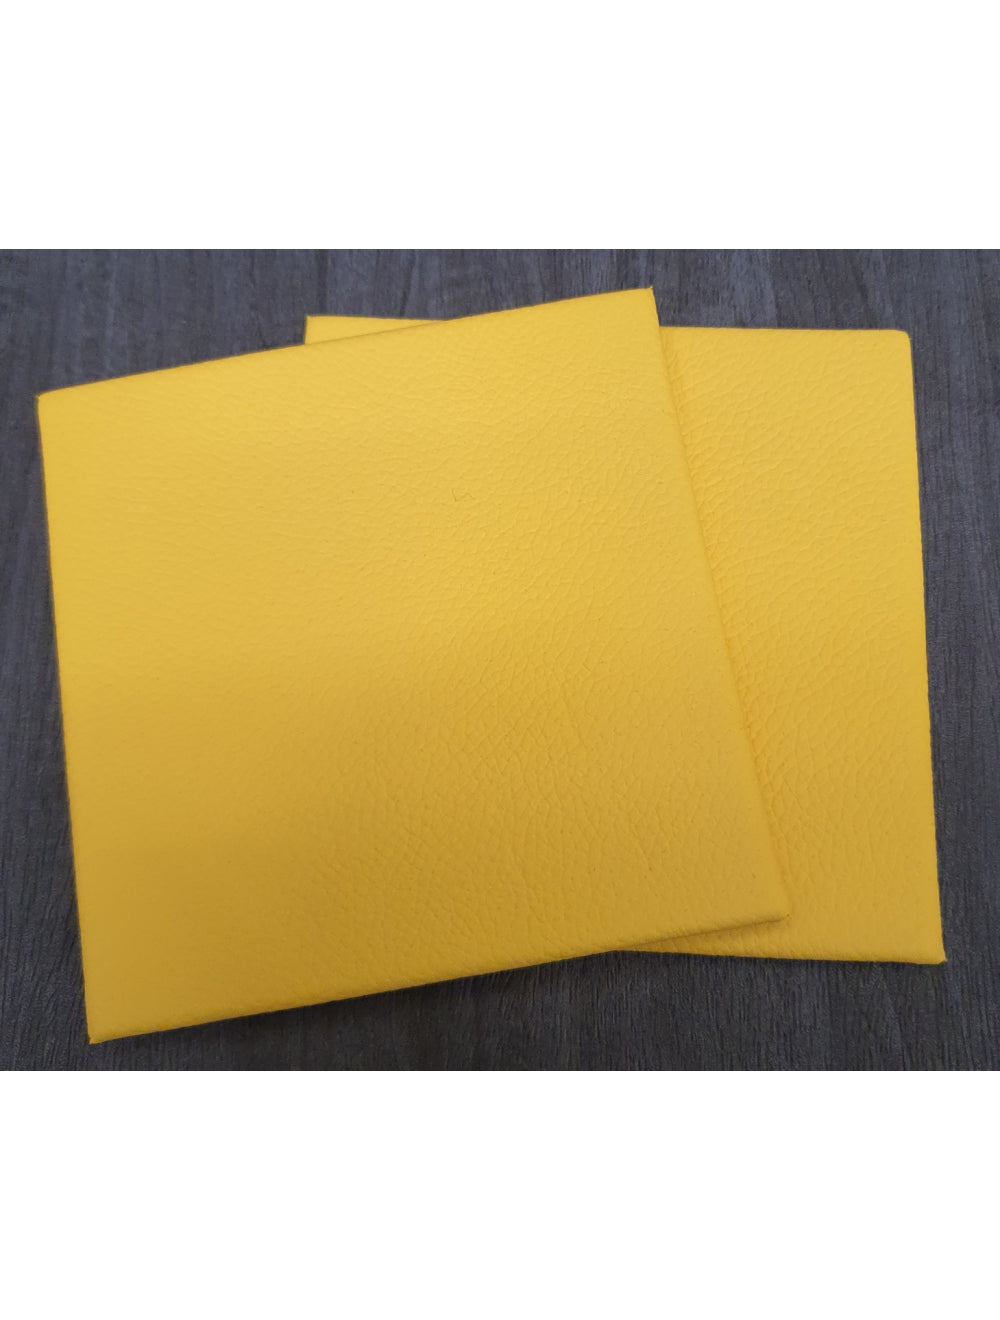 Keltainen Shelly Leather Coaster - 10 cm neliö (myydään)